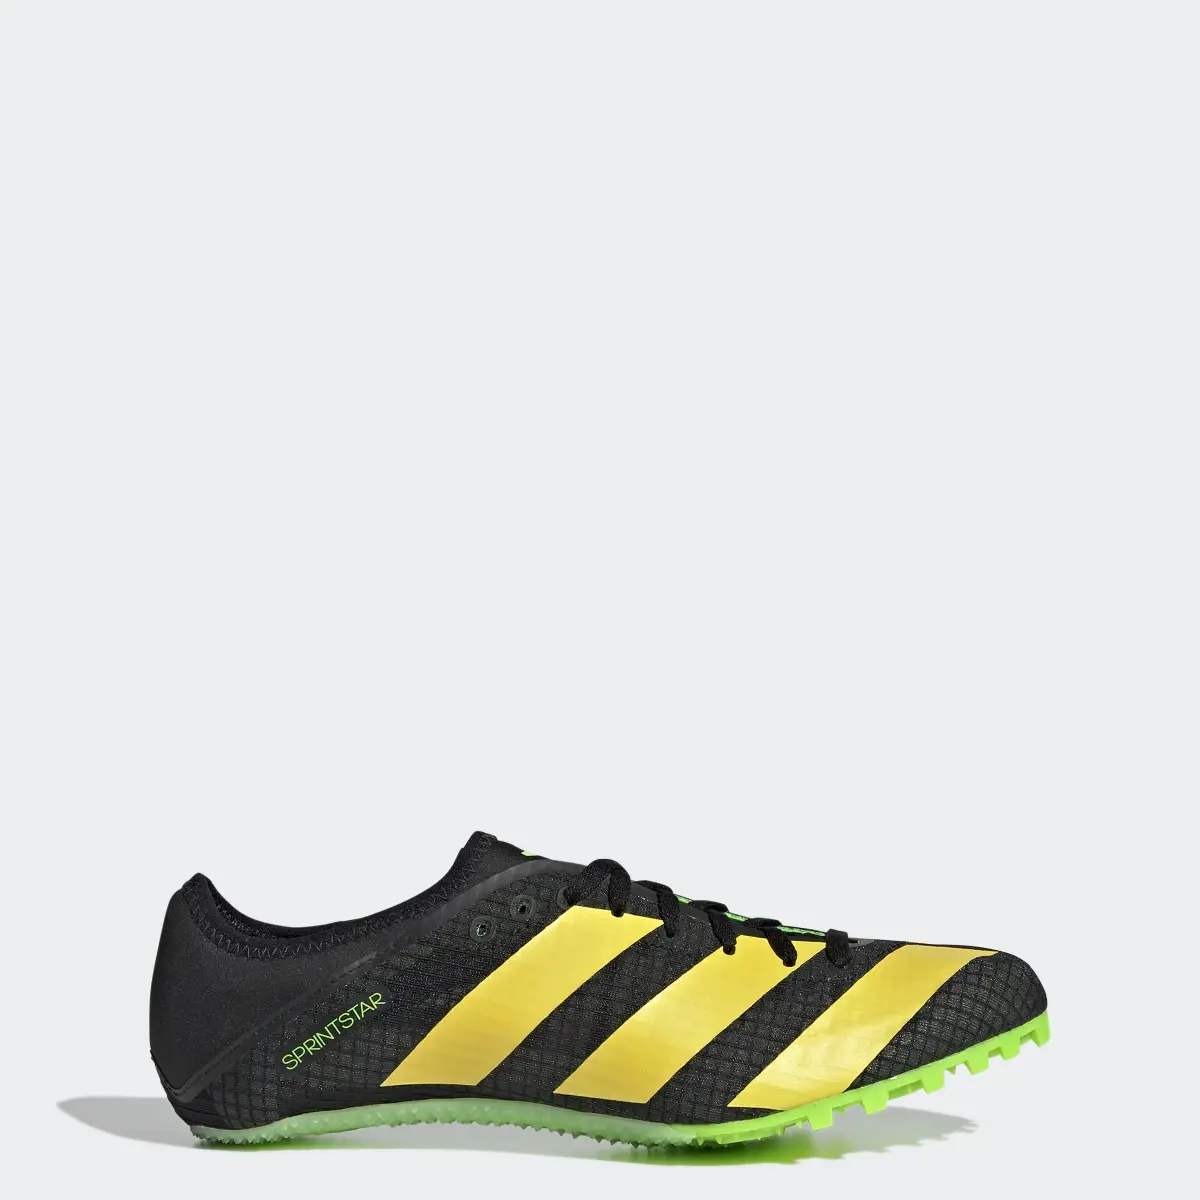 Adidas Sprintstar Spike-Schuh. 1